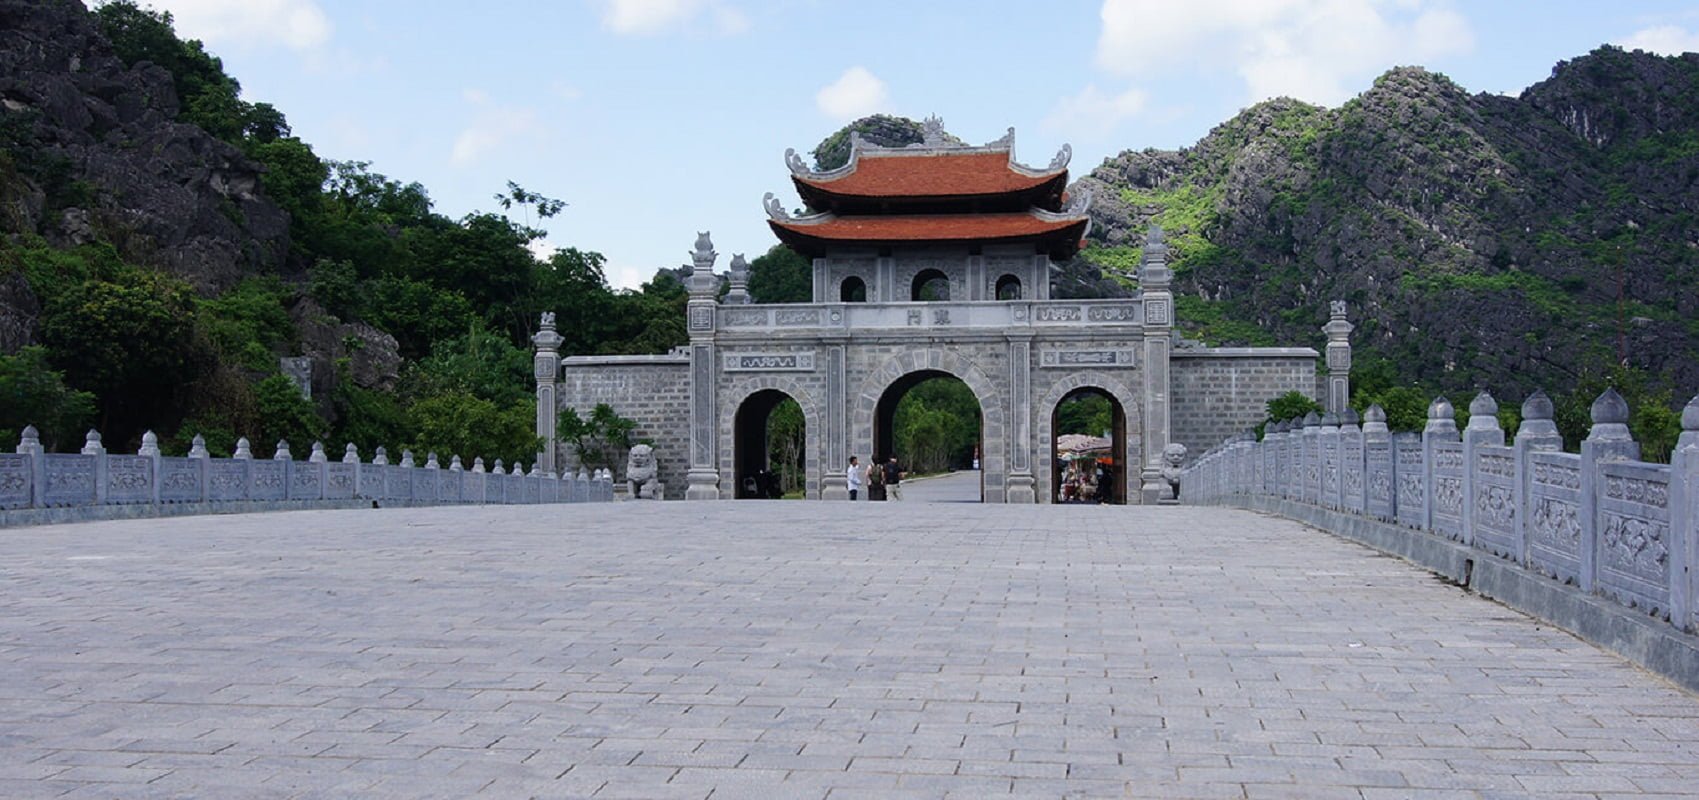 Hoa Lu ancient capital near Bai Dinh pagoda